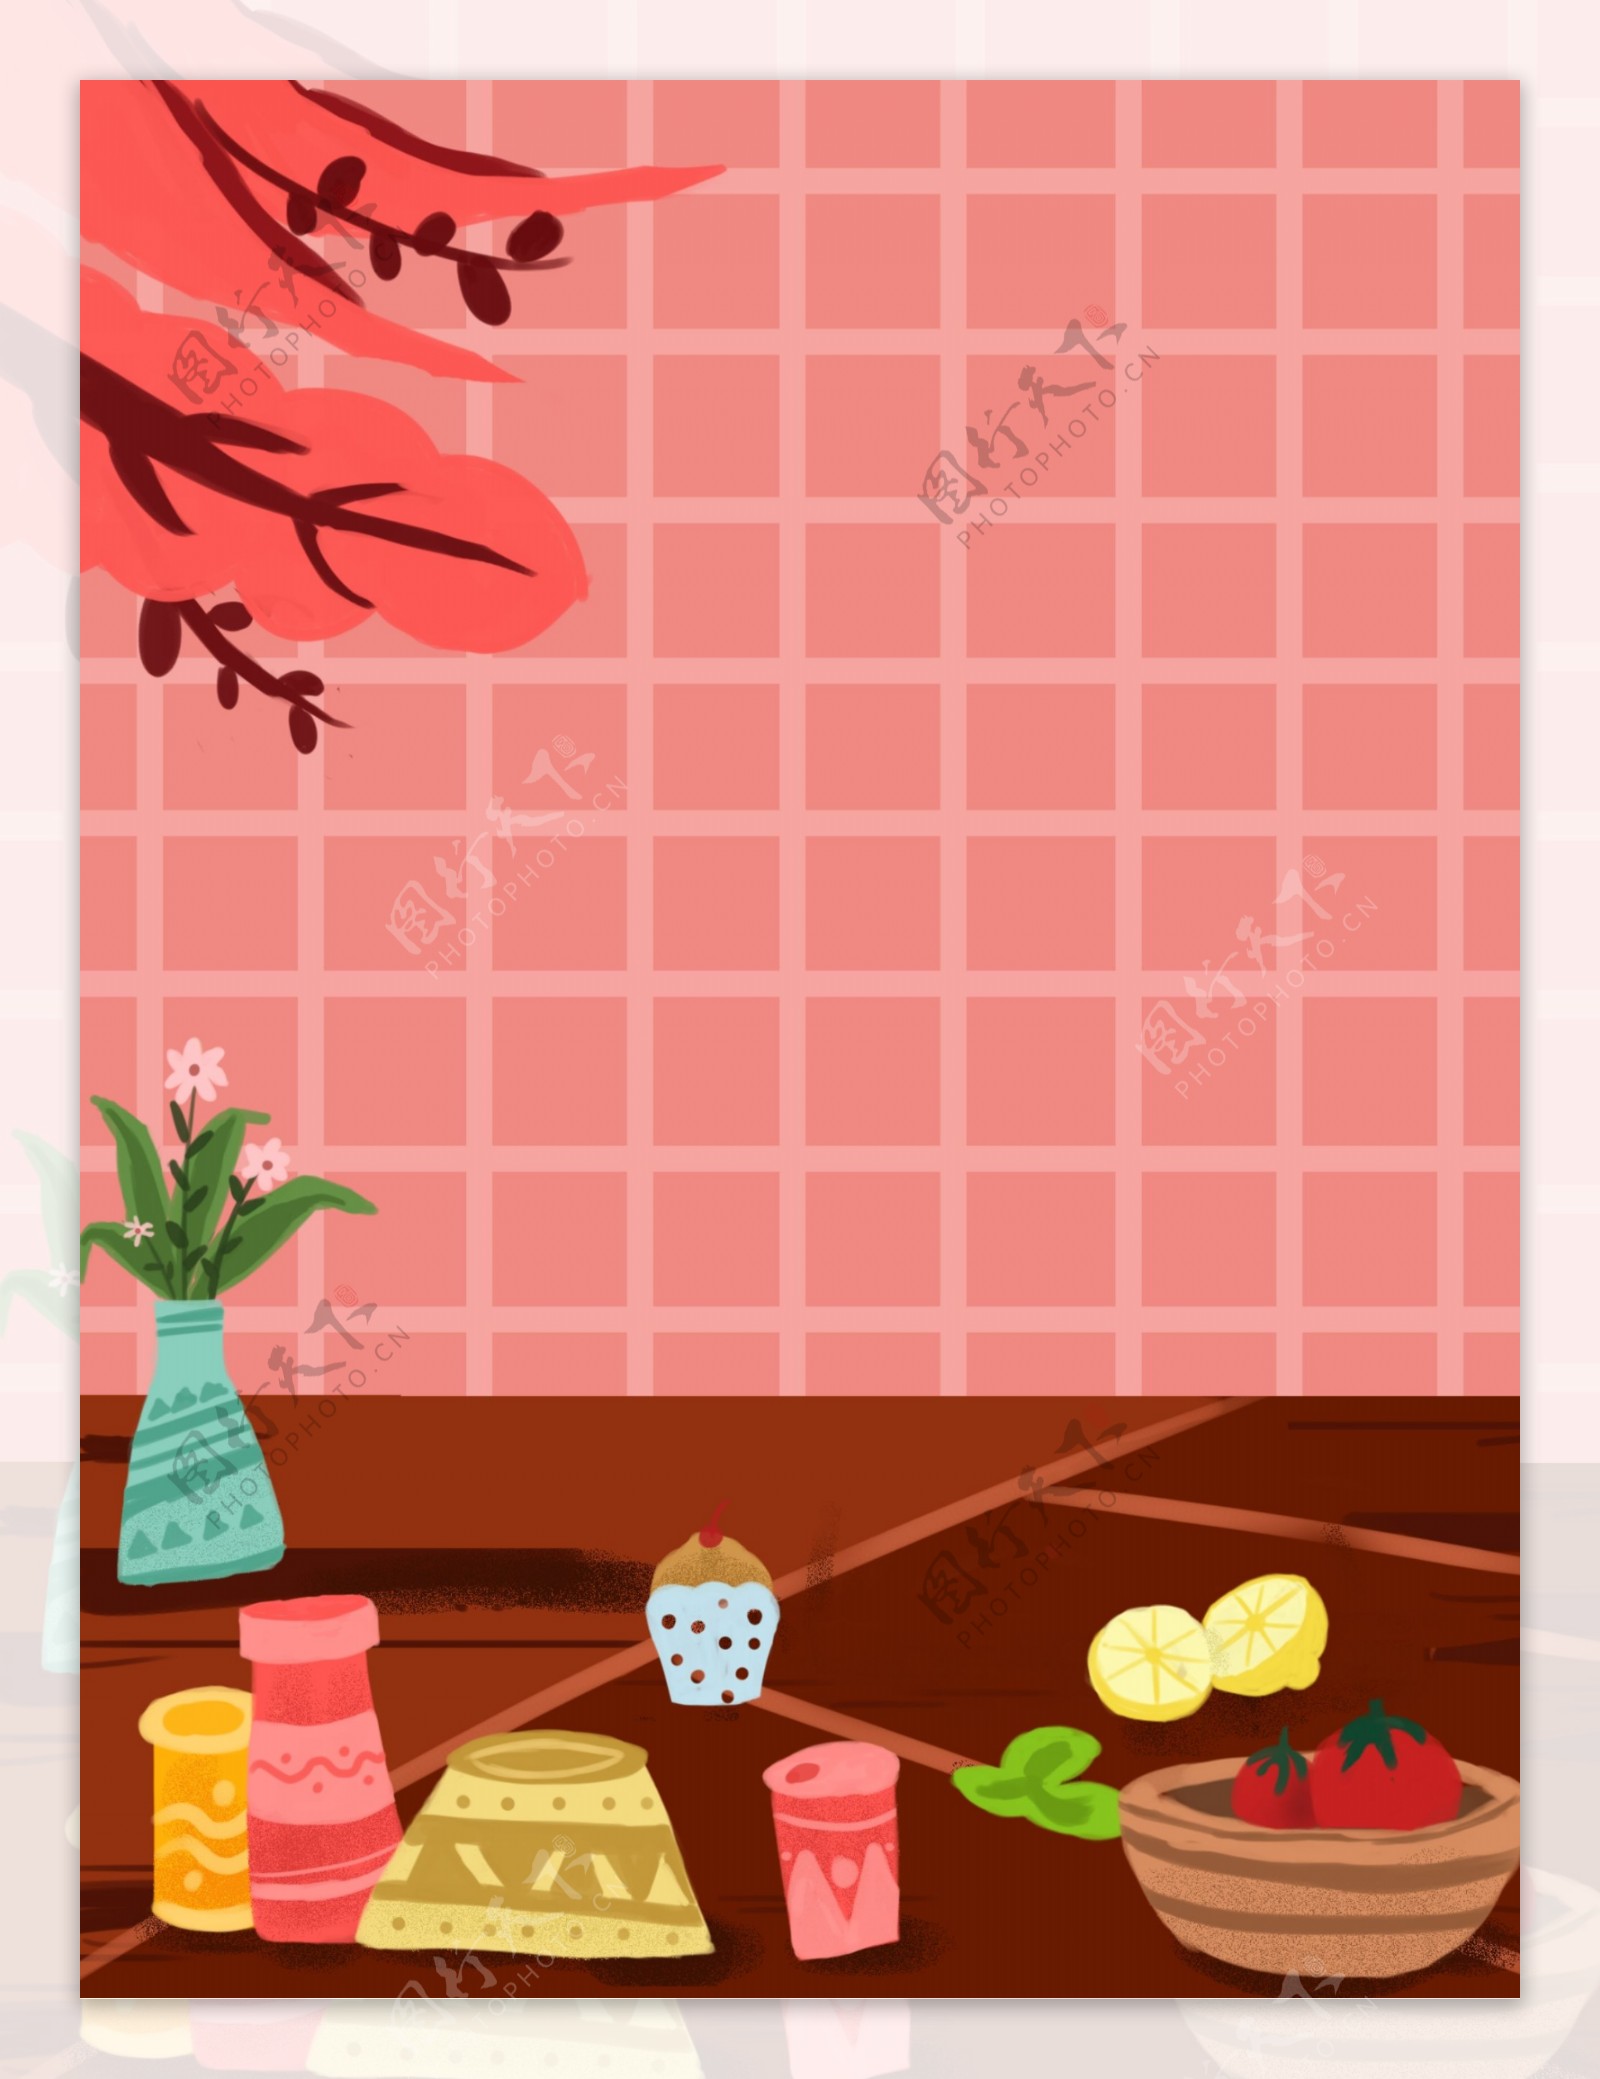 可爱粉色厨房生活插画背景